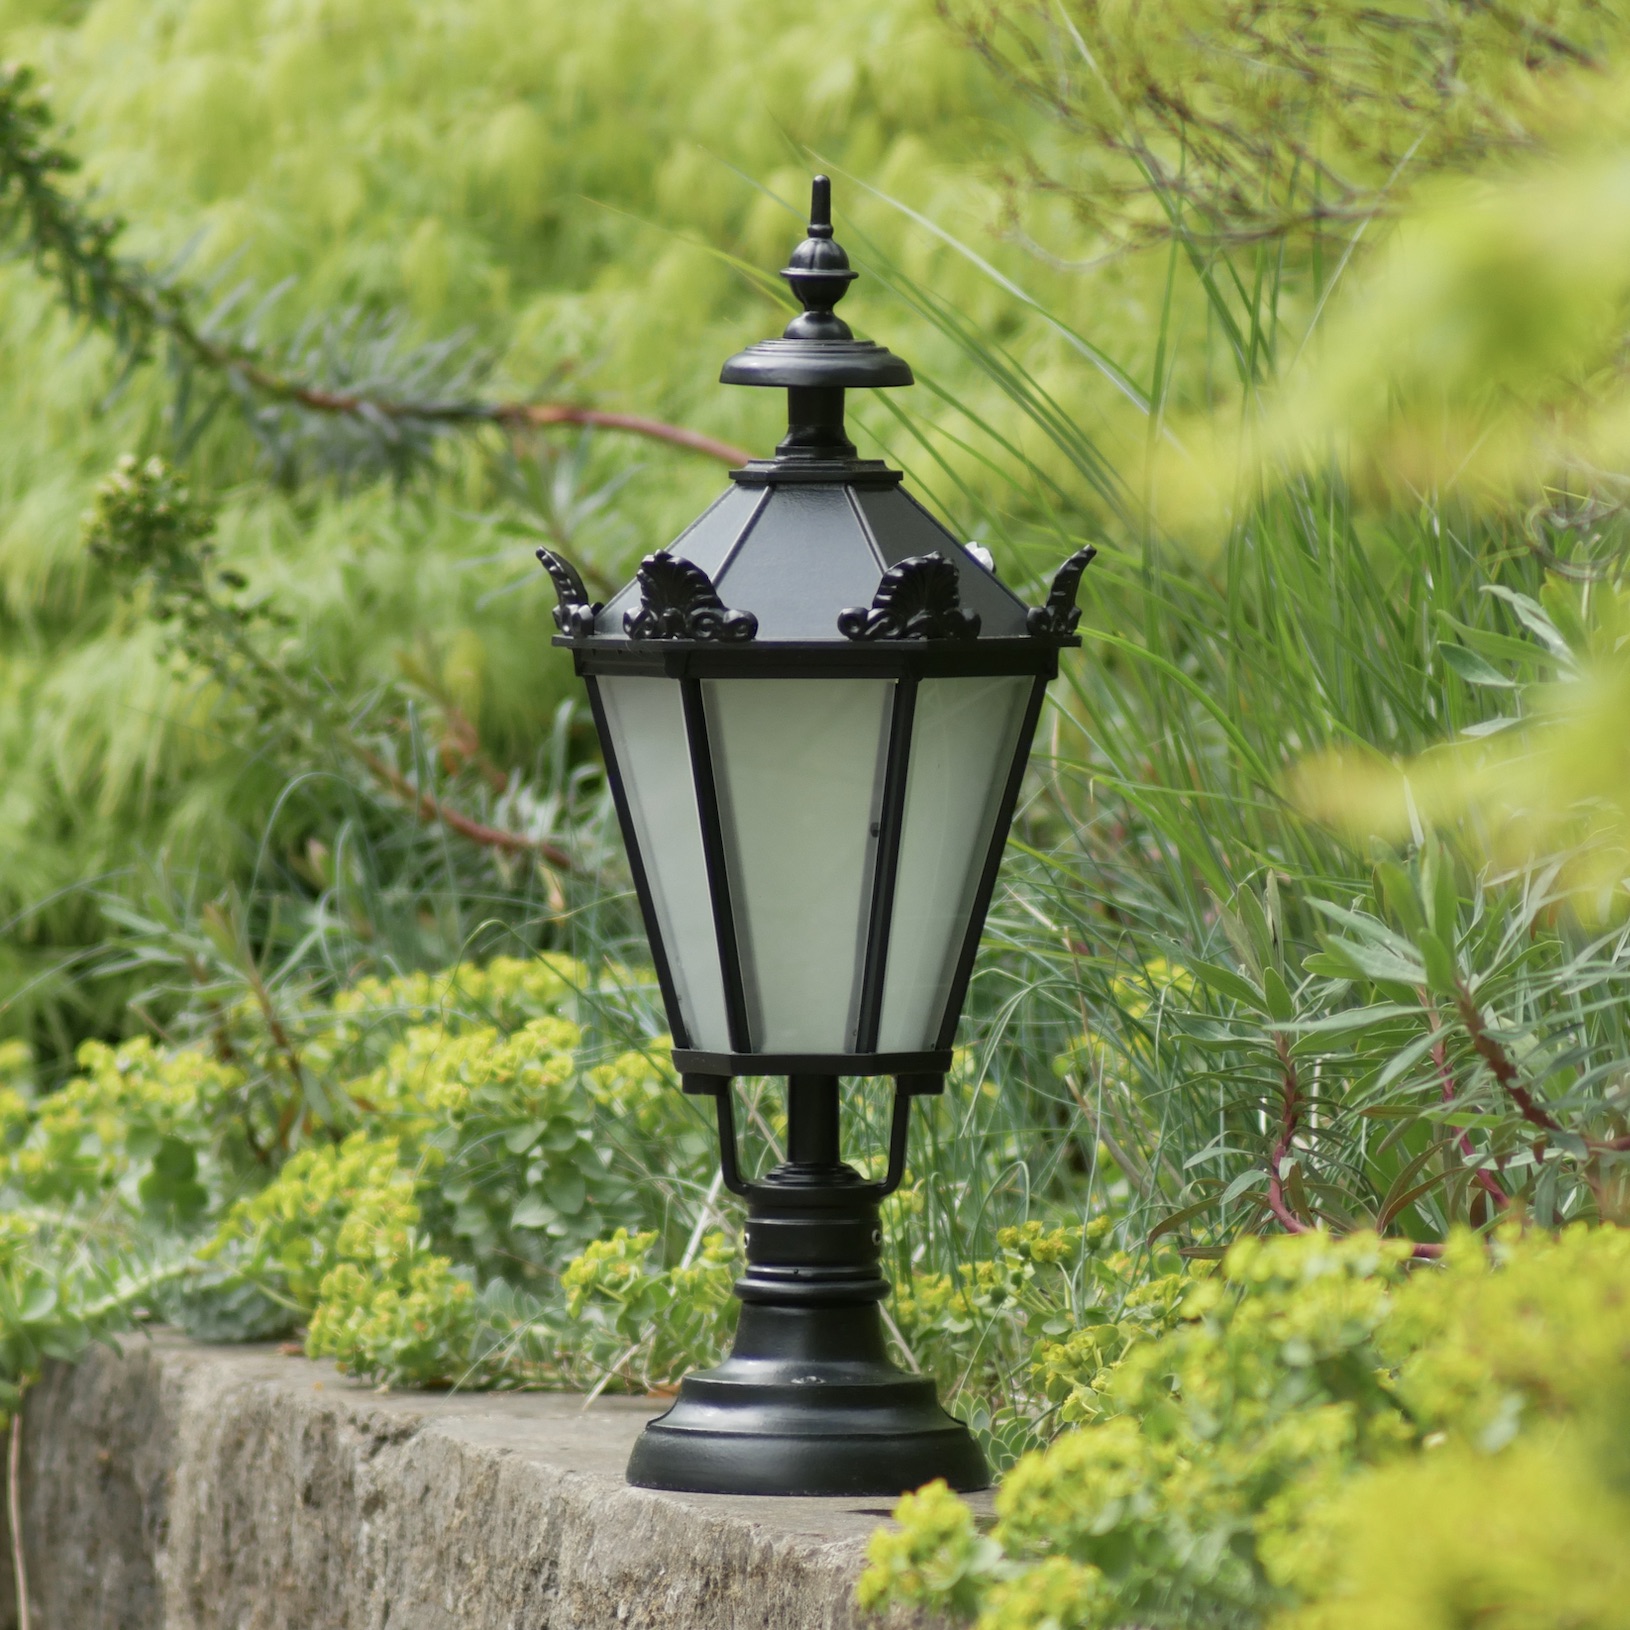 Silesian Pedestal Light Elba 70: Gartenleuchte Elba mit Schinkel-Laterne 70, kleines Modell, schwarz, satiniertes Glas, Mast 95 mm